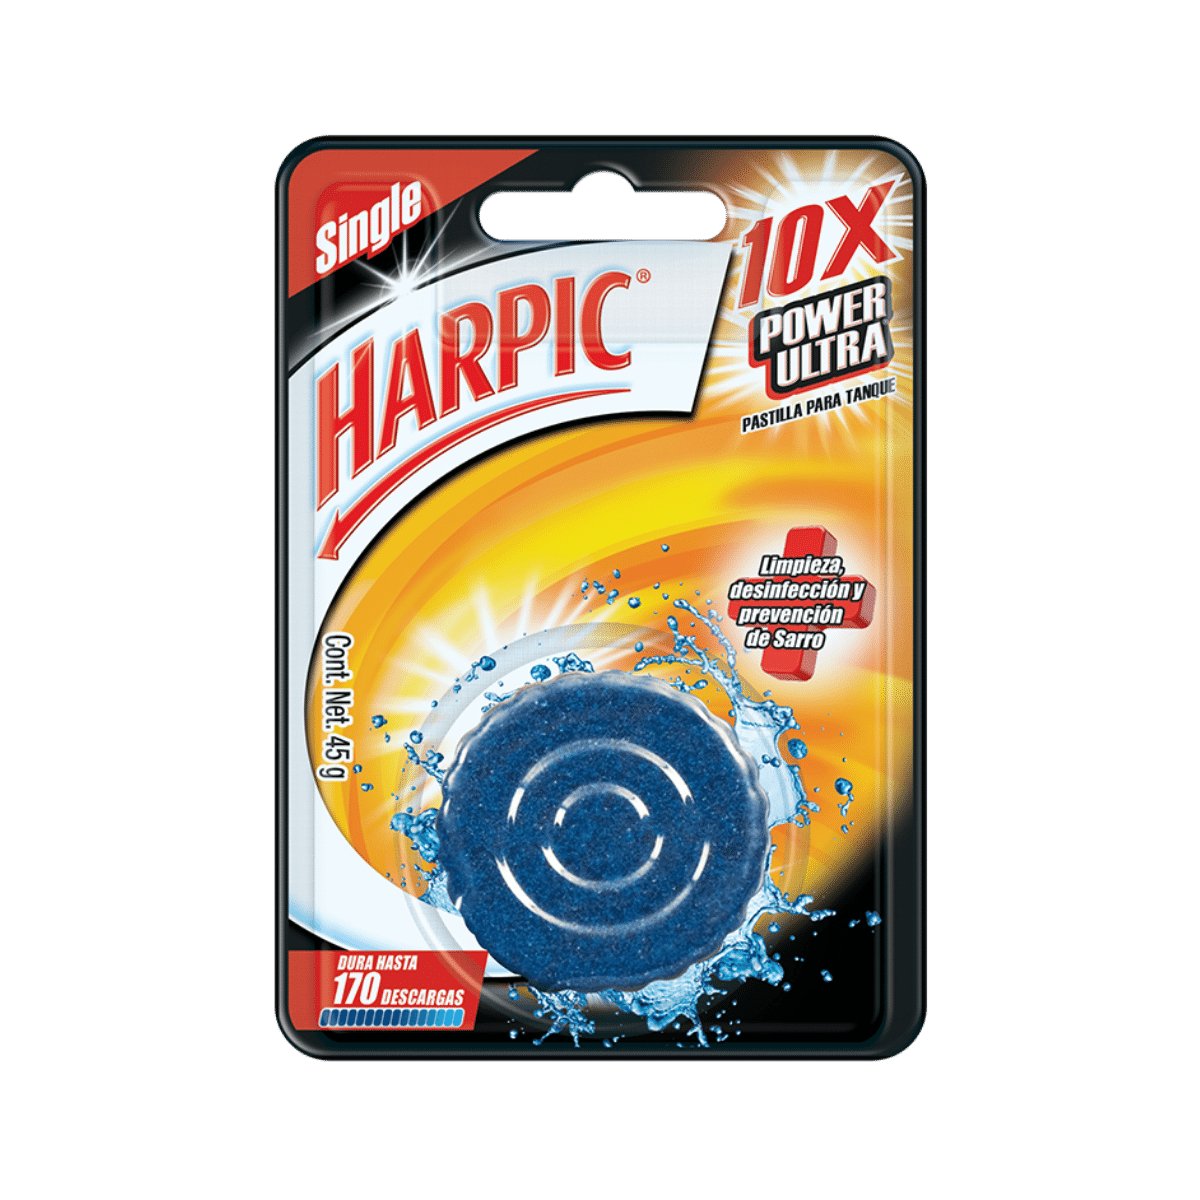 Harpic® Power Ultra® 10X Limpiador para inodoros - Karlan ¡Marca la Limpieza!RB-3024236